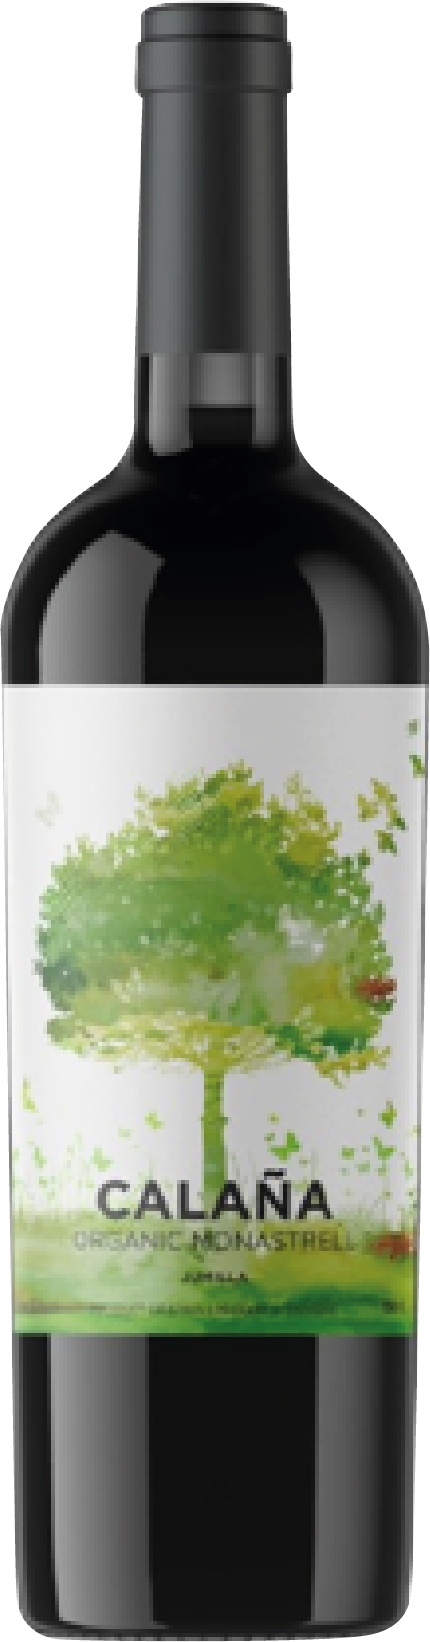 GS25는 미국의 유기농 상품 전문 온라인몰 '스라이브 마켓'의 와인을 들여와 한정 수량으로 판매한다. 사진은 깔라나오가닉. 사진=GS25